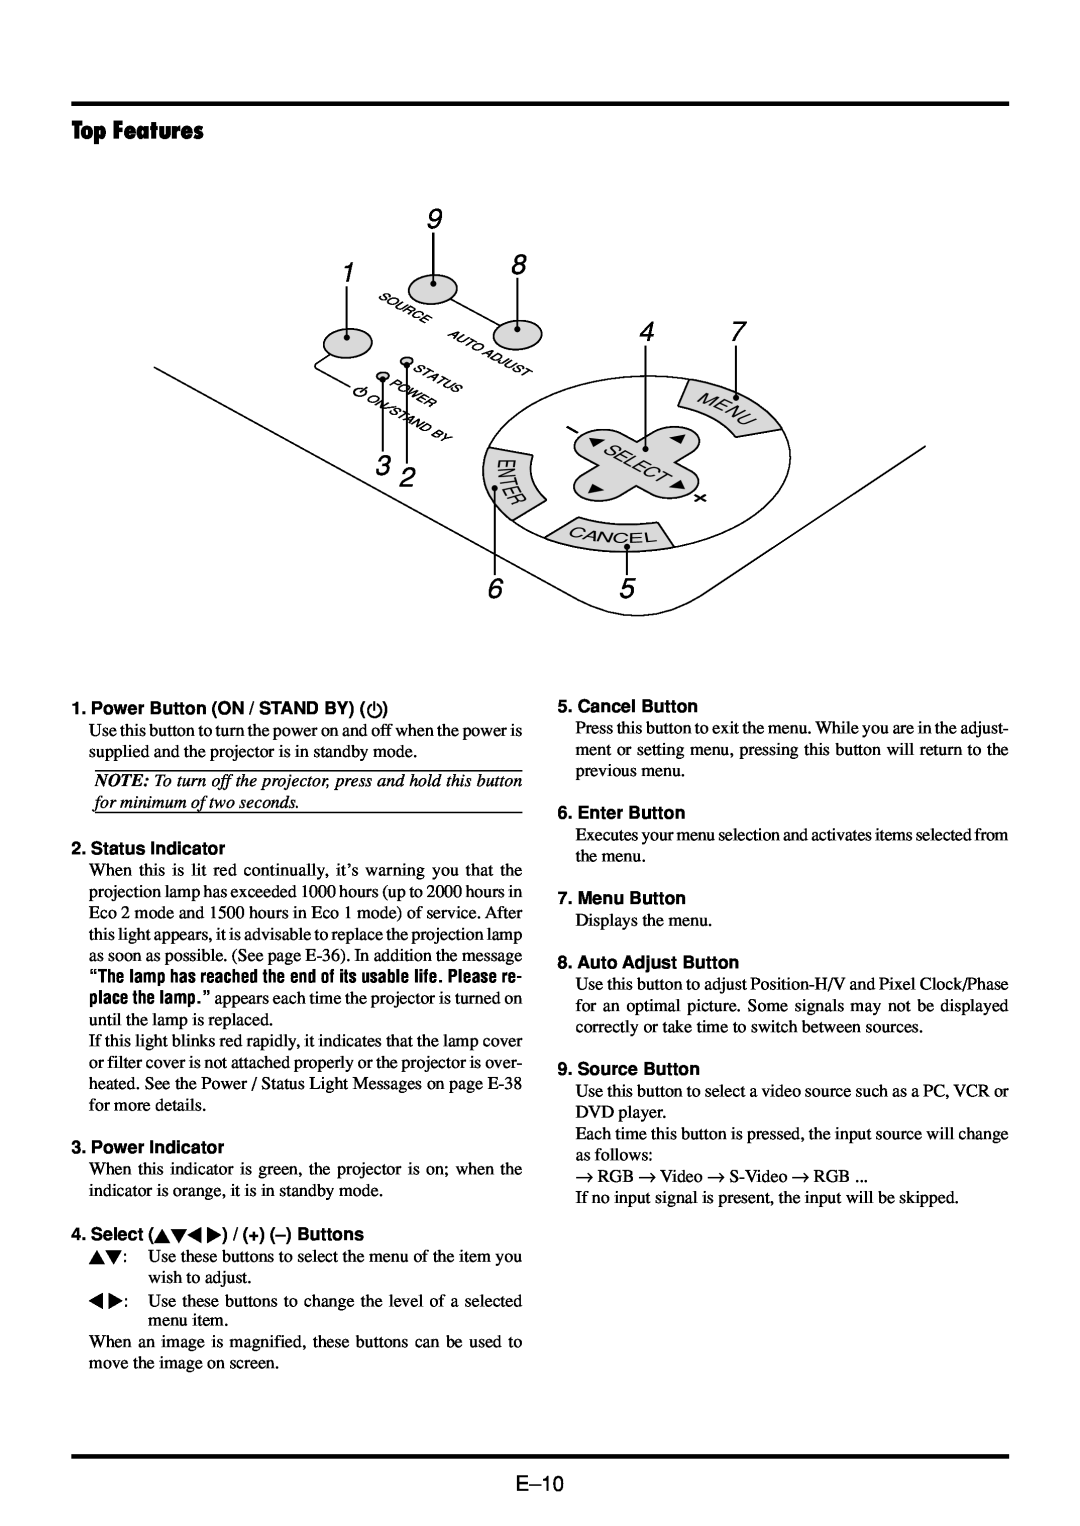 NEC VT45 user manual Top Features, E-10 